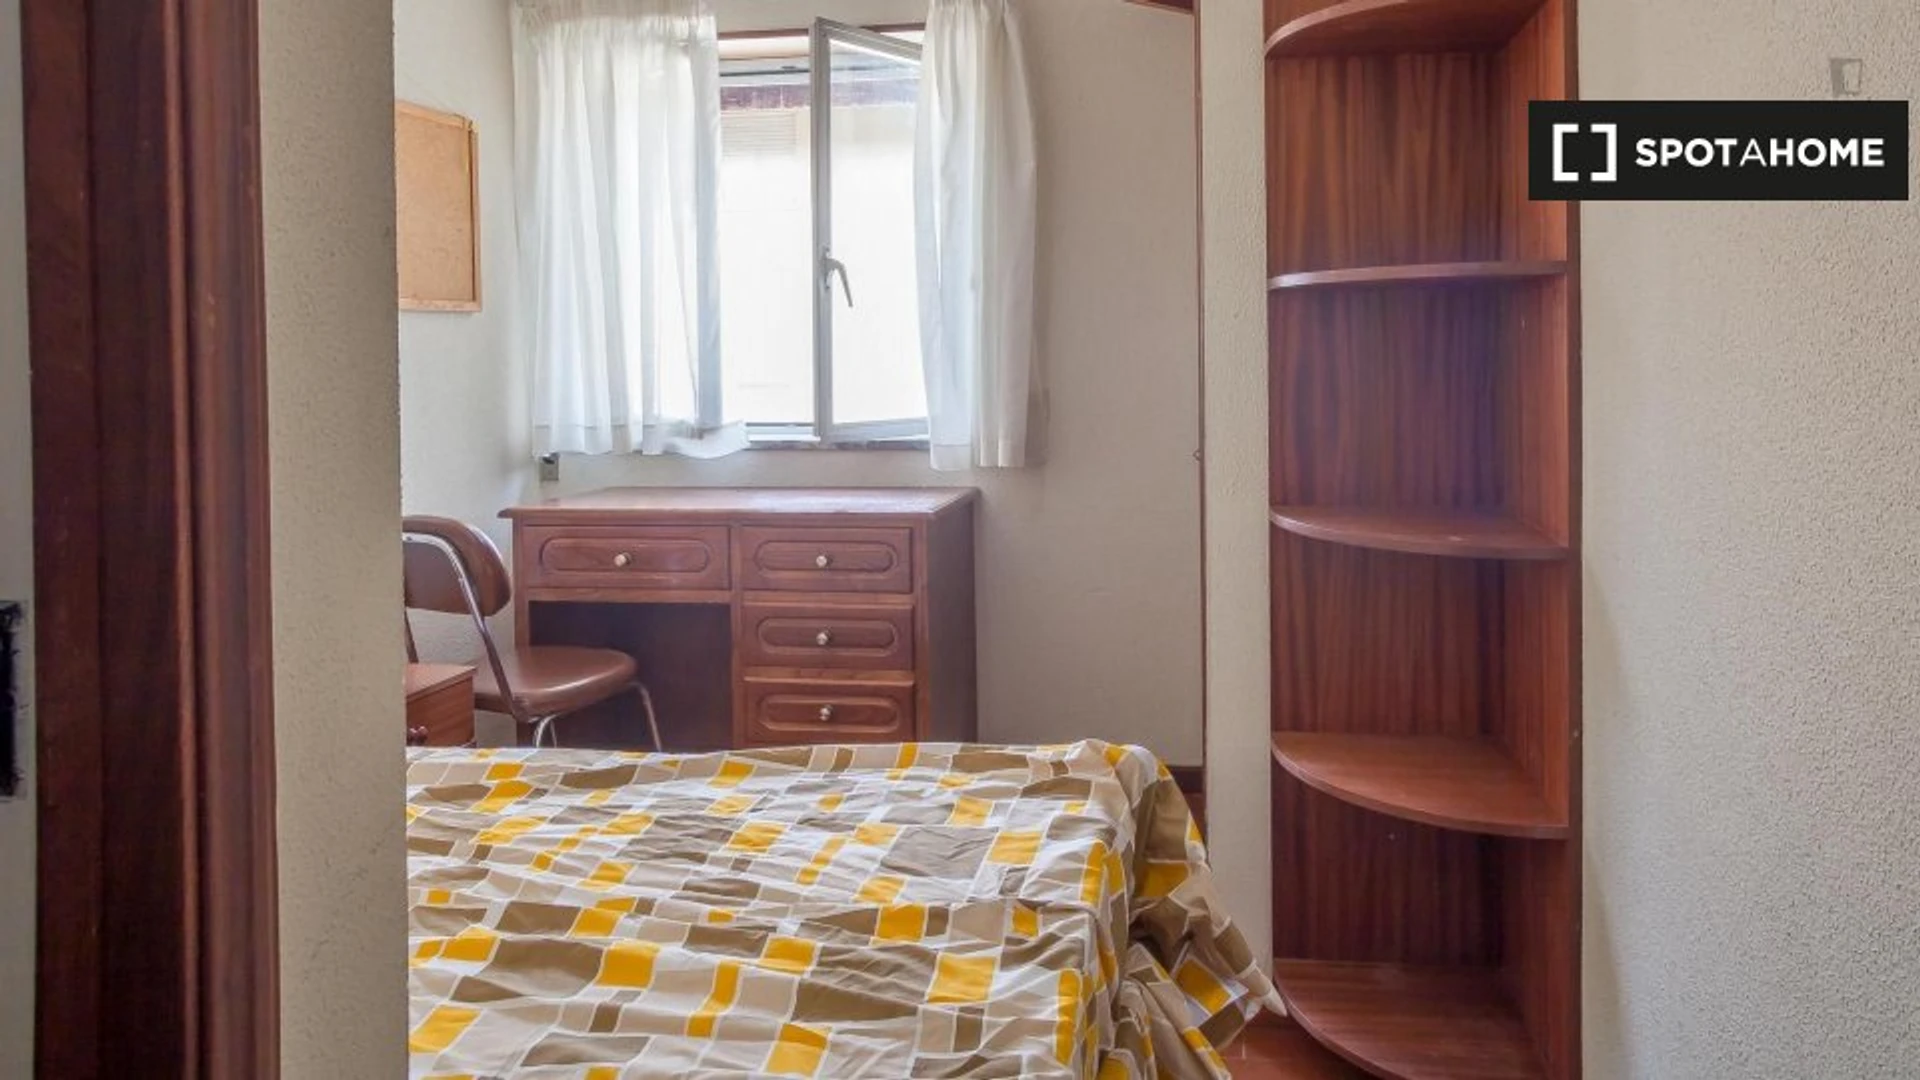 Chambre à louer dans un appartement en colocation à Coimbra